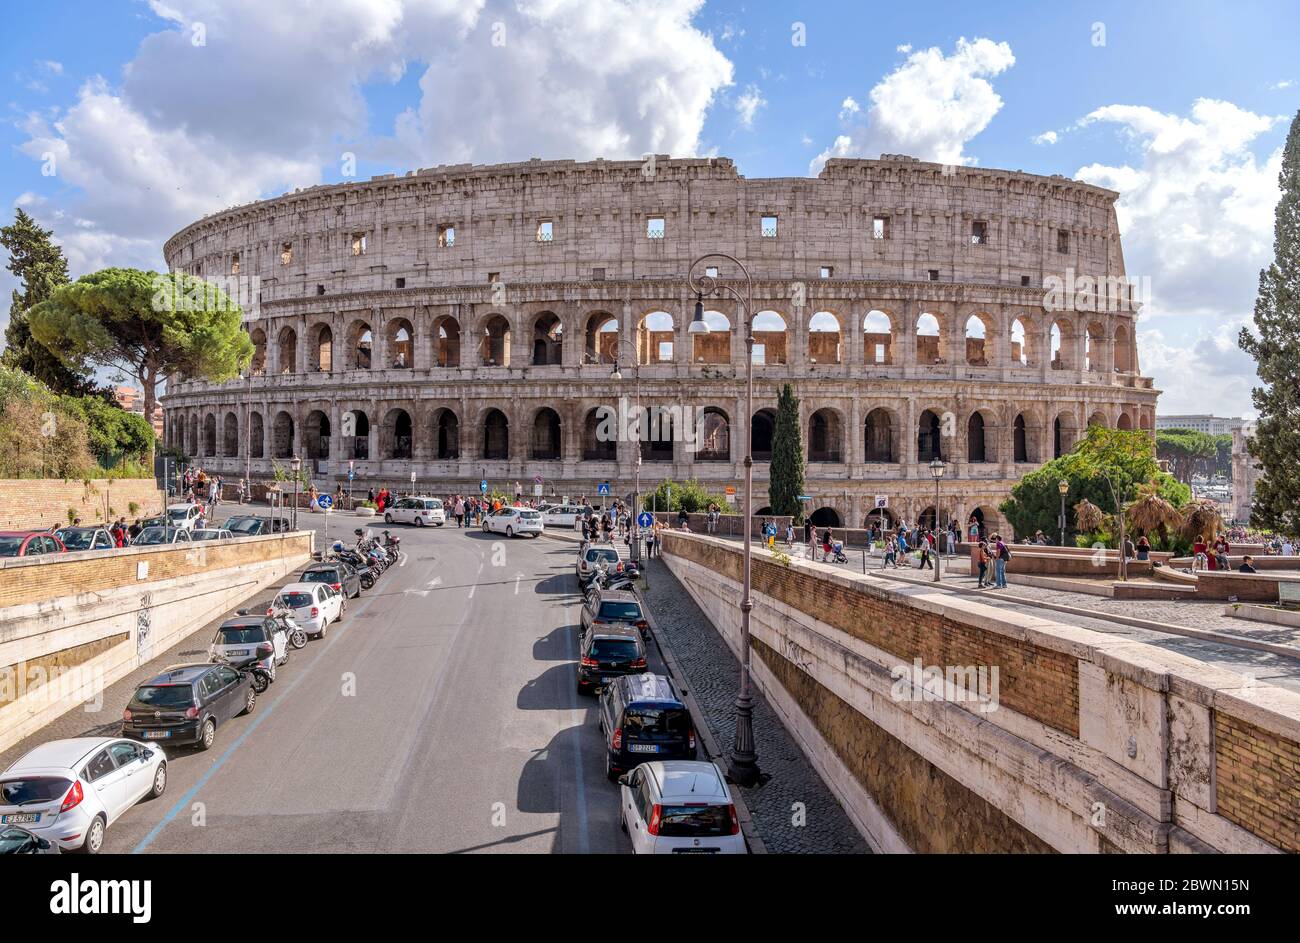 Colosseum - UNE rue avec vue complète sur le mur extérieur nord du Colisée, le temps d'un après-midi ensoleillé d'octobre. Rome, Italie. Banque D'Images